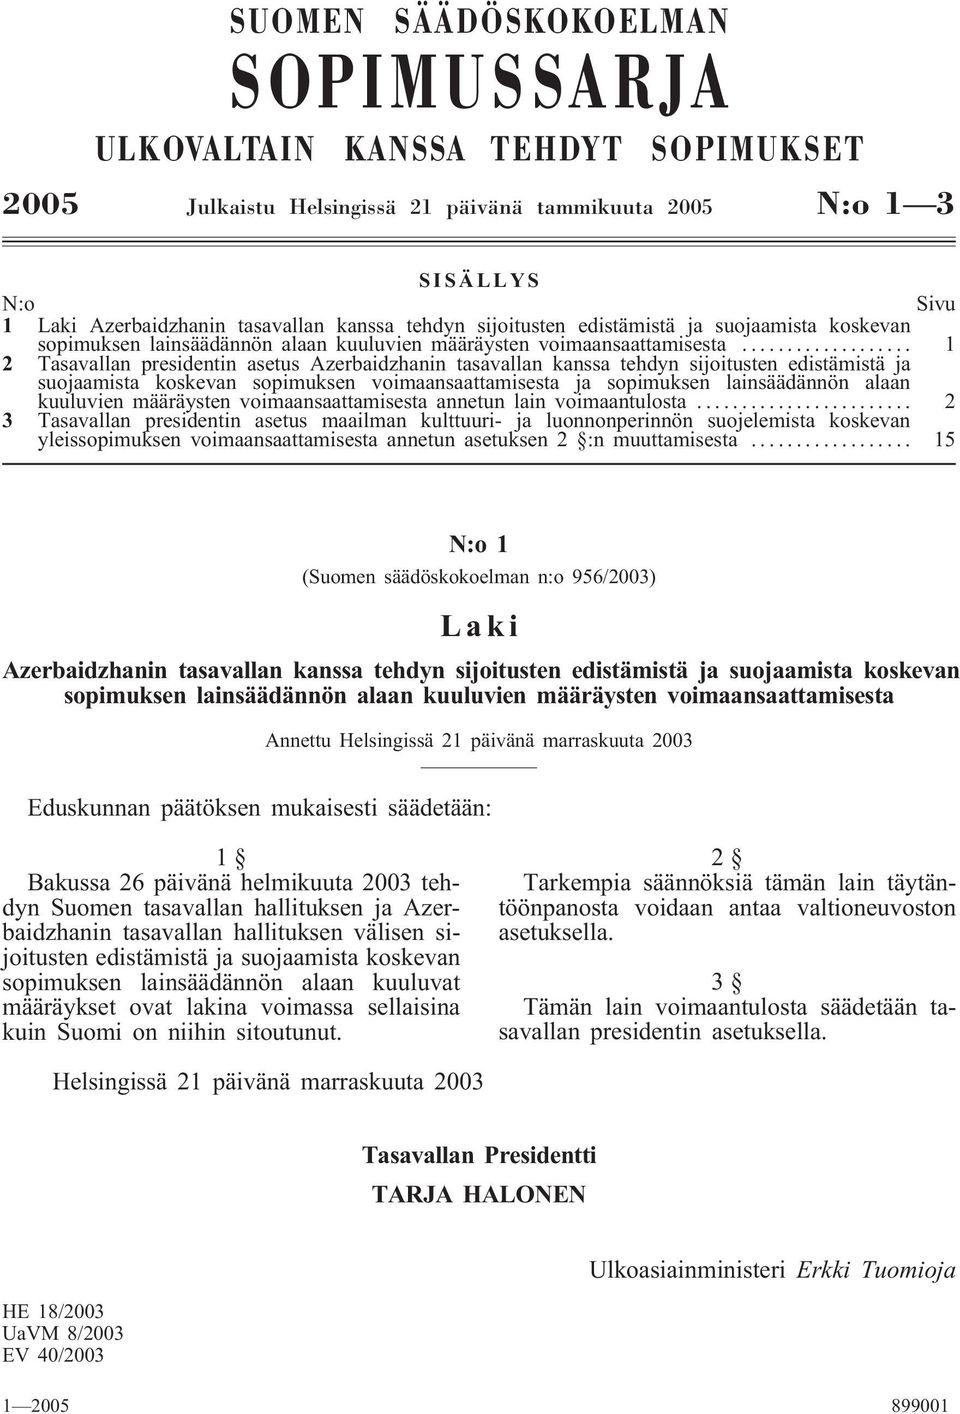 .. 1 2 Tasavallan presidentin asetus Azerbaidzhanin tasavallan kanssa tehdyn sijoitusten edistämistä ja suojaamista koskevan sopimuksen voimaansaattamisesta ja sopimuksen lainsäädännön alaan